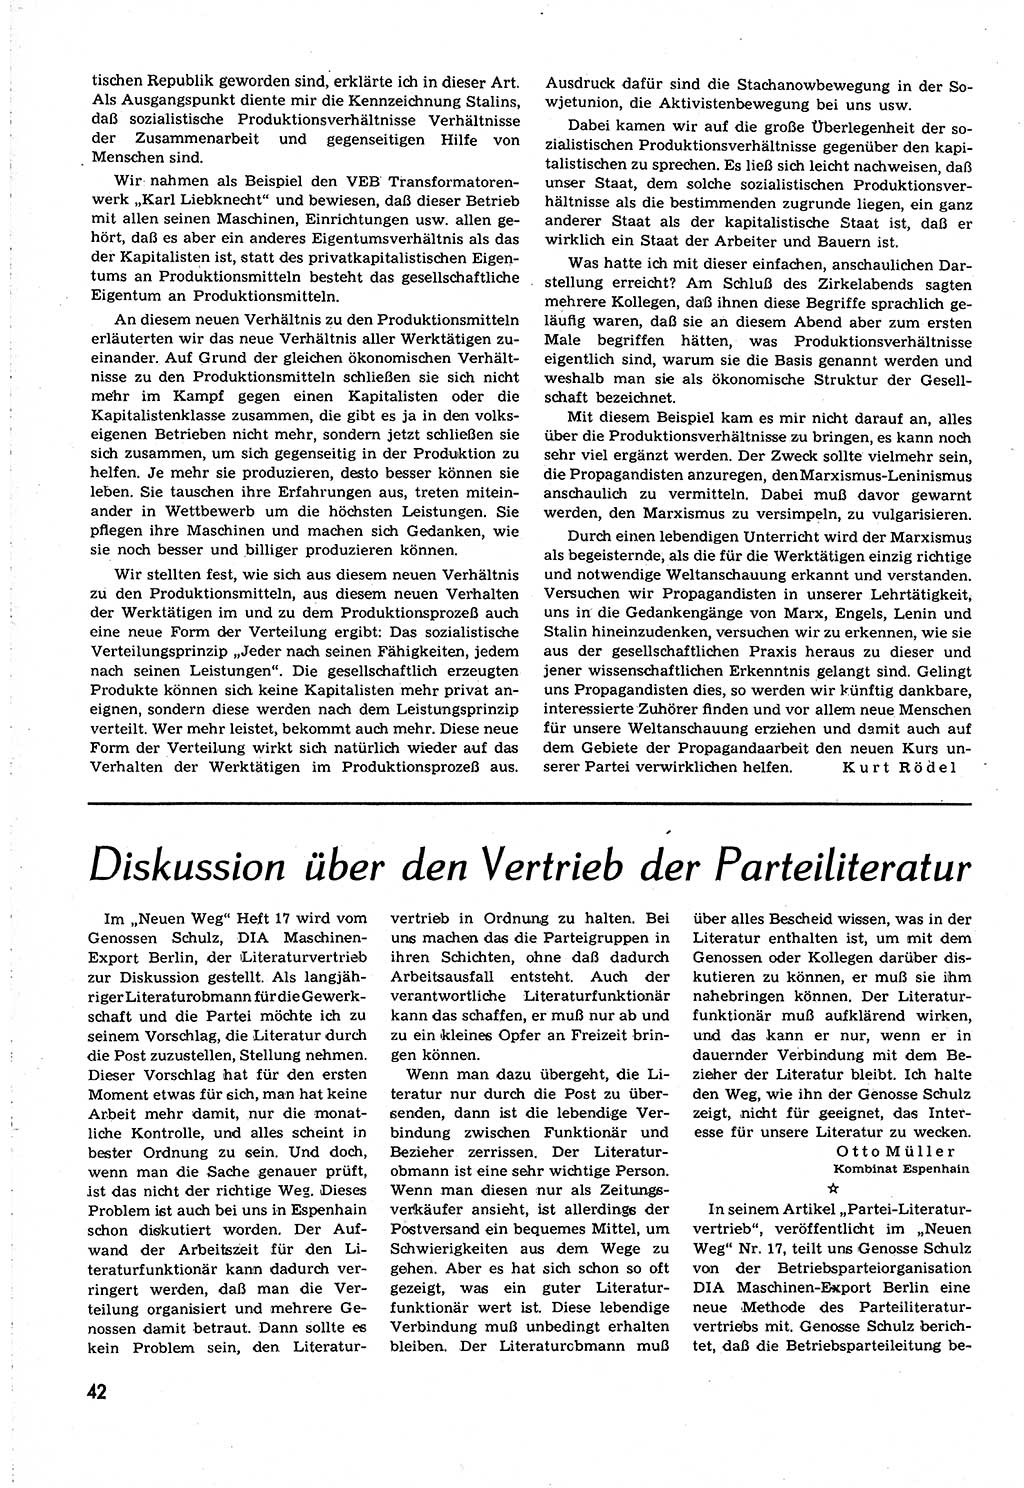 Neuer Weg (NW), Organ des Zentralkomitees (ZK) [Sozialistische Einheitspartei Deutschlands (SED)] für alle Parteiarbeiter, 8. Jahrgang [Deutsche Demokratische Republik (DDR)] 1953, Heft 21/42 (NW ZK SED DDR 1953, H. 21/42)